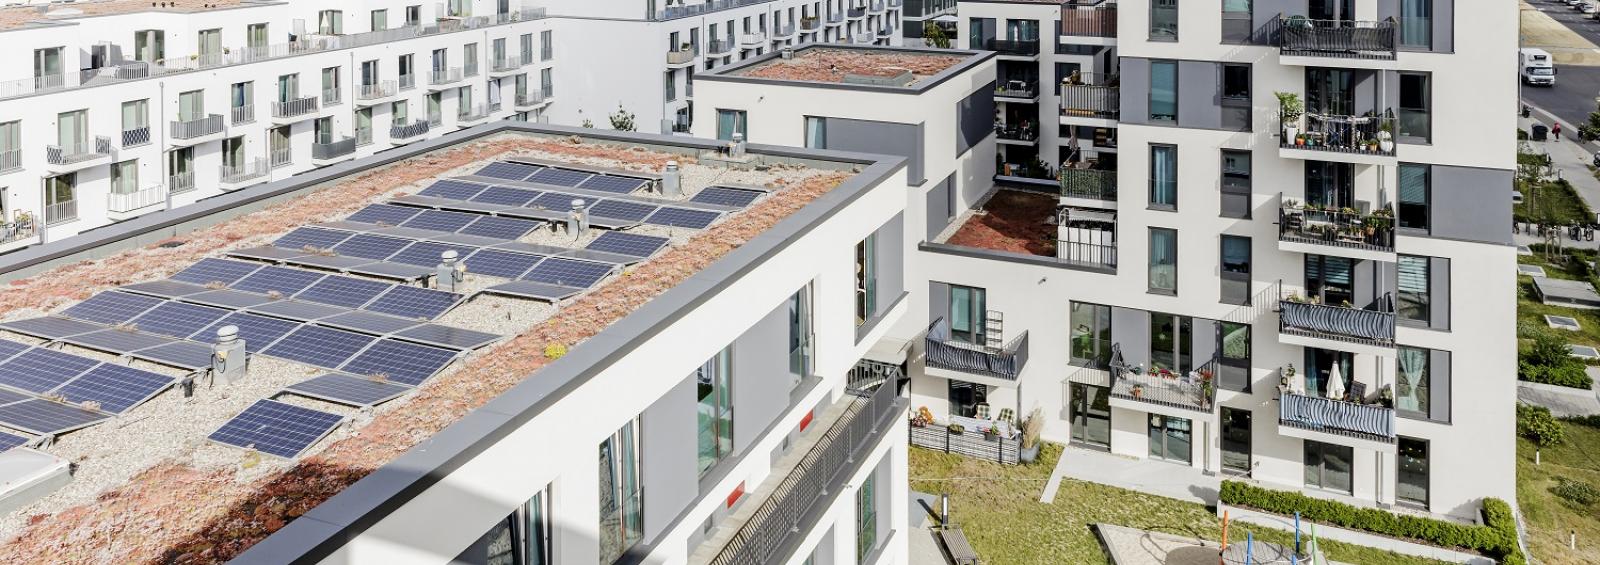 Solarstromanlage der Berliner Energieagentur auf den Dächern der Charlotte am Campus Foto: Monique Wüstenhagen